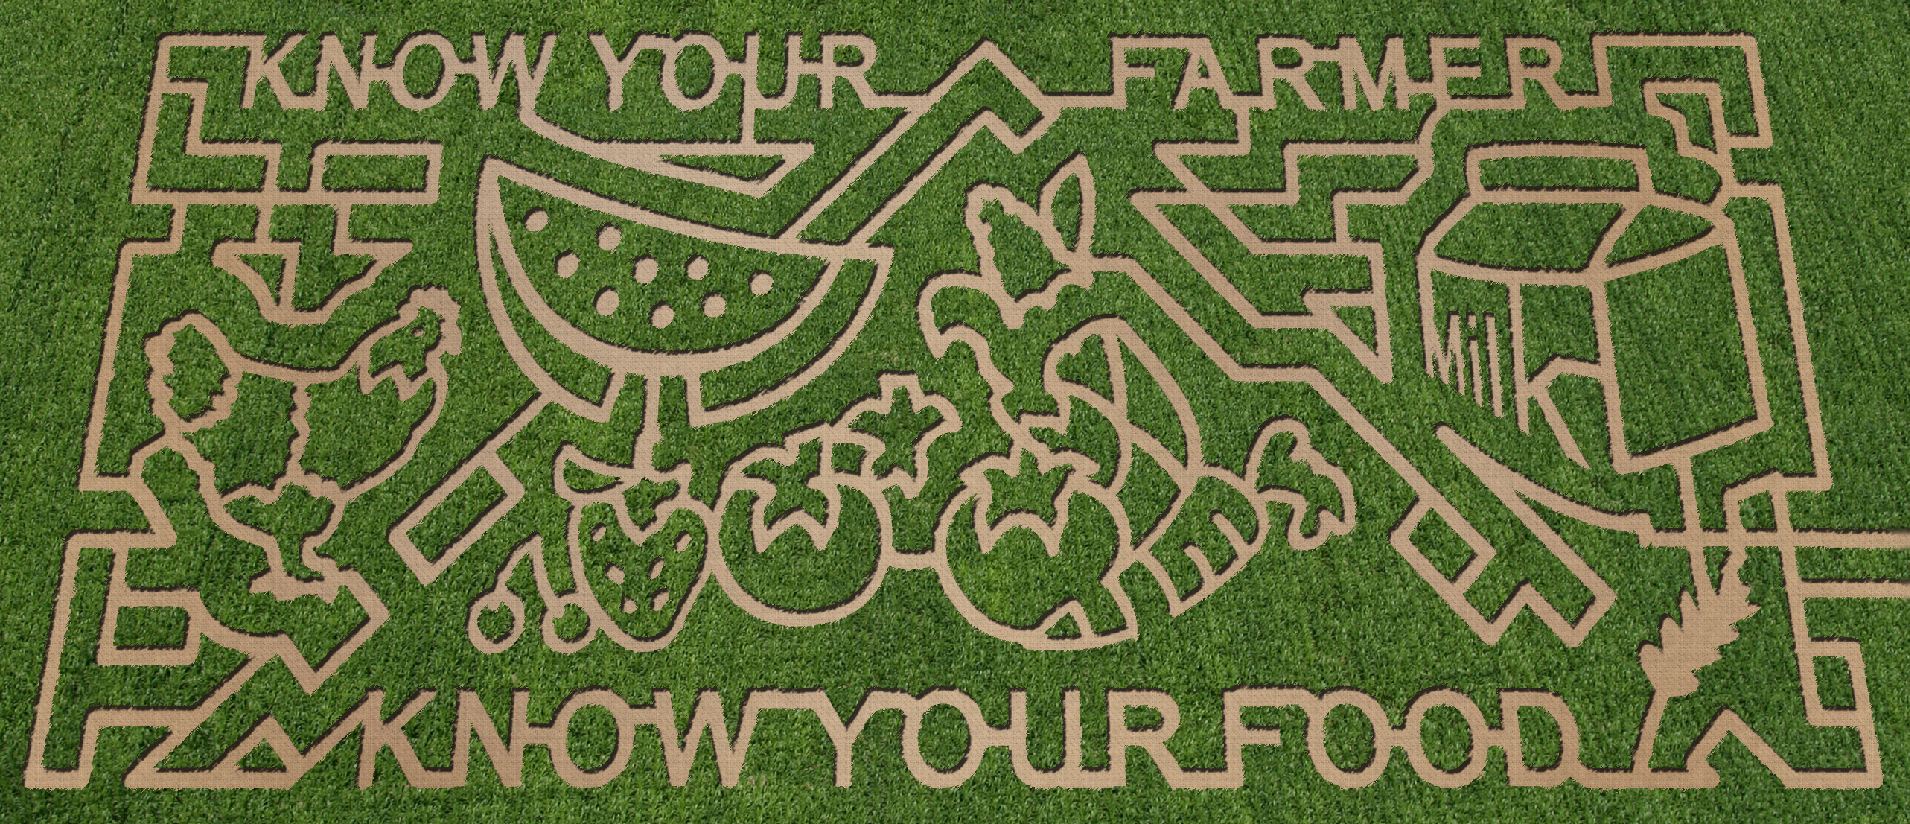 2010 Lattin Farms corn maze 